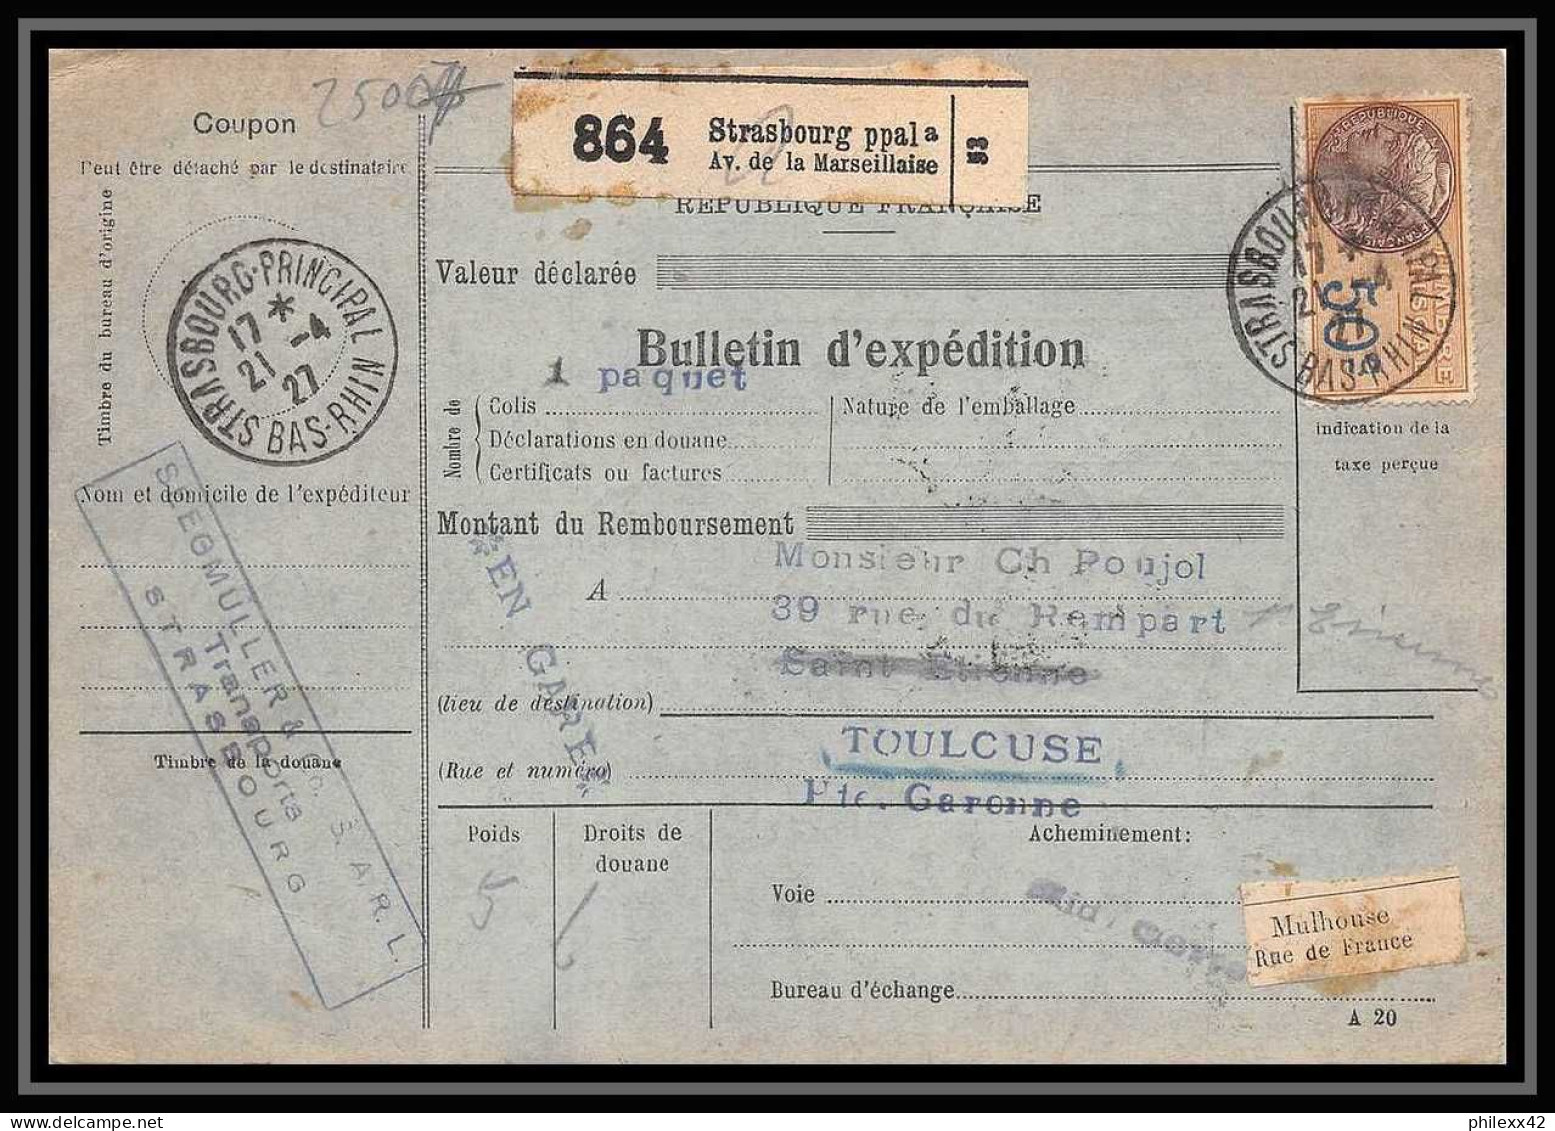 25007 Bulletin D'expédition France Colis Postaux Fiscal Haut Rhin 1927 Strasbourg Semeuse Merson 145 EN GARE - Briefe U. Dokumente